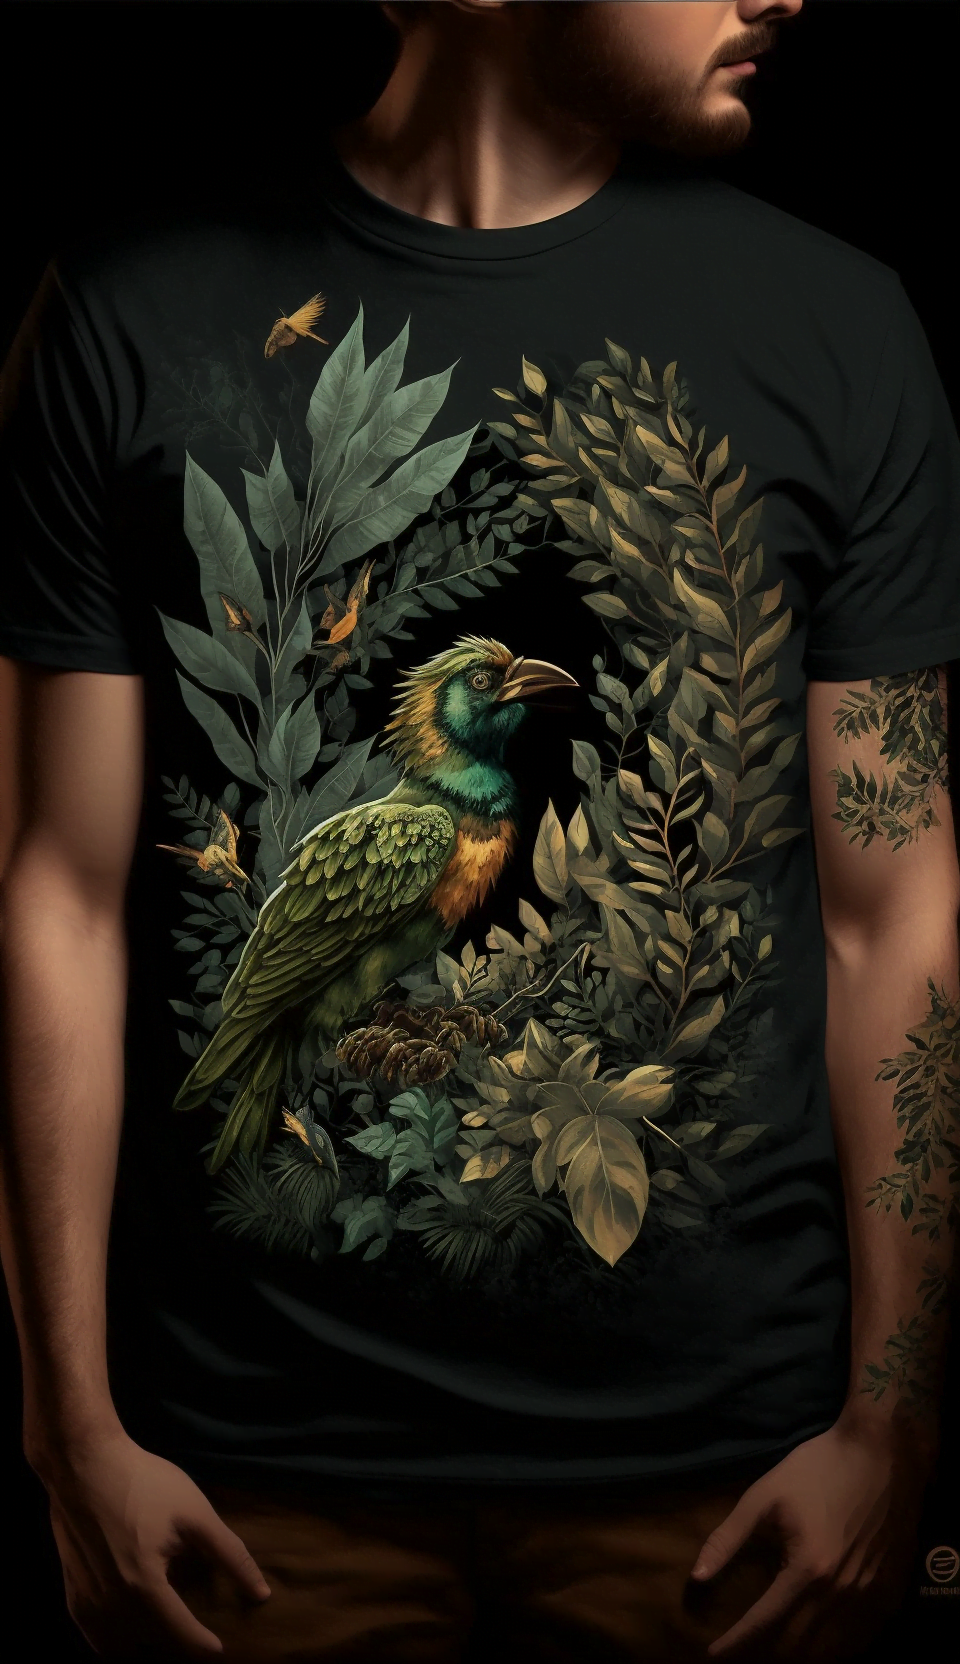 Textil-Design mit Vogel auf T-Shirt